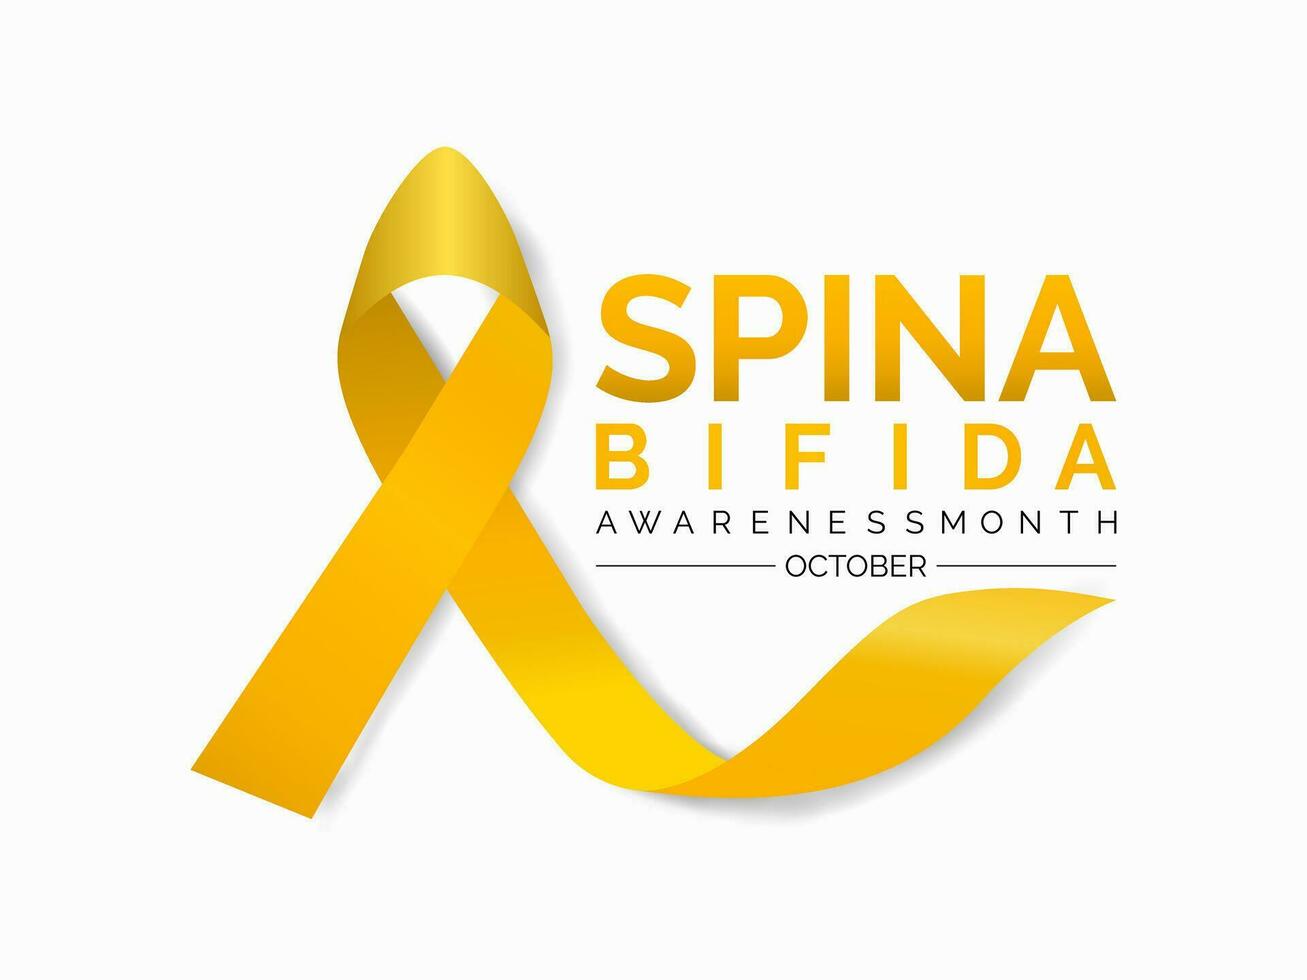 Spina bifida Bewusstsein Monat ist beobachtete jeder Jahr im Oktober. es ist ein Art von Neuralrohr Defekt ntd. Banner, Poster, Karte, Hintergrund Design. vektor